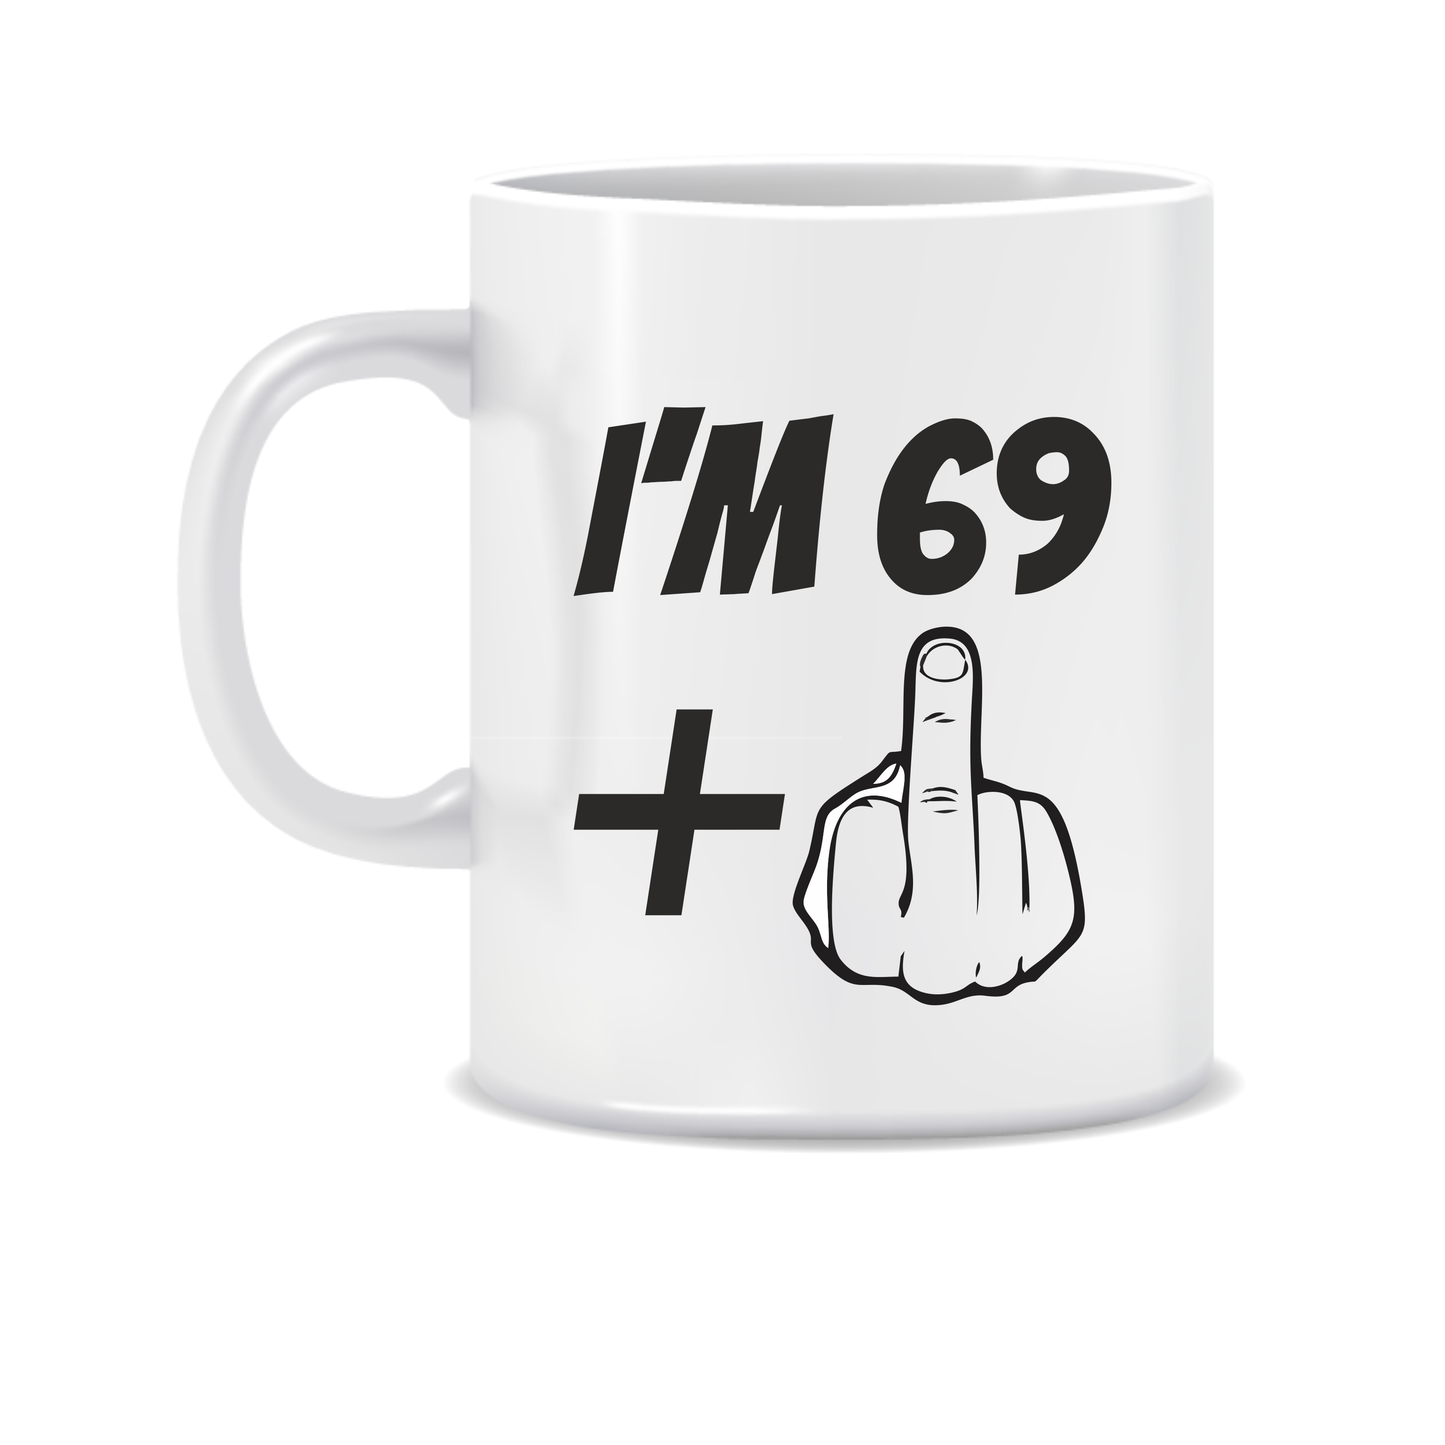 Funny "Plus One" Age Mug